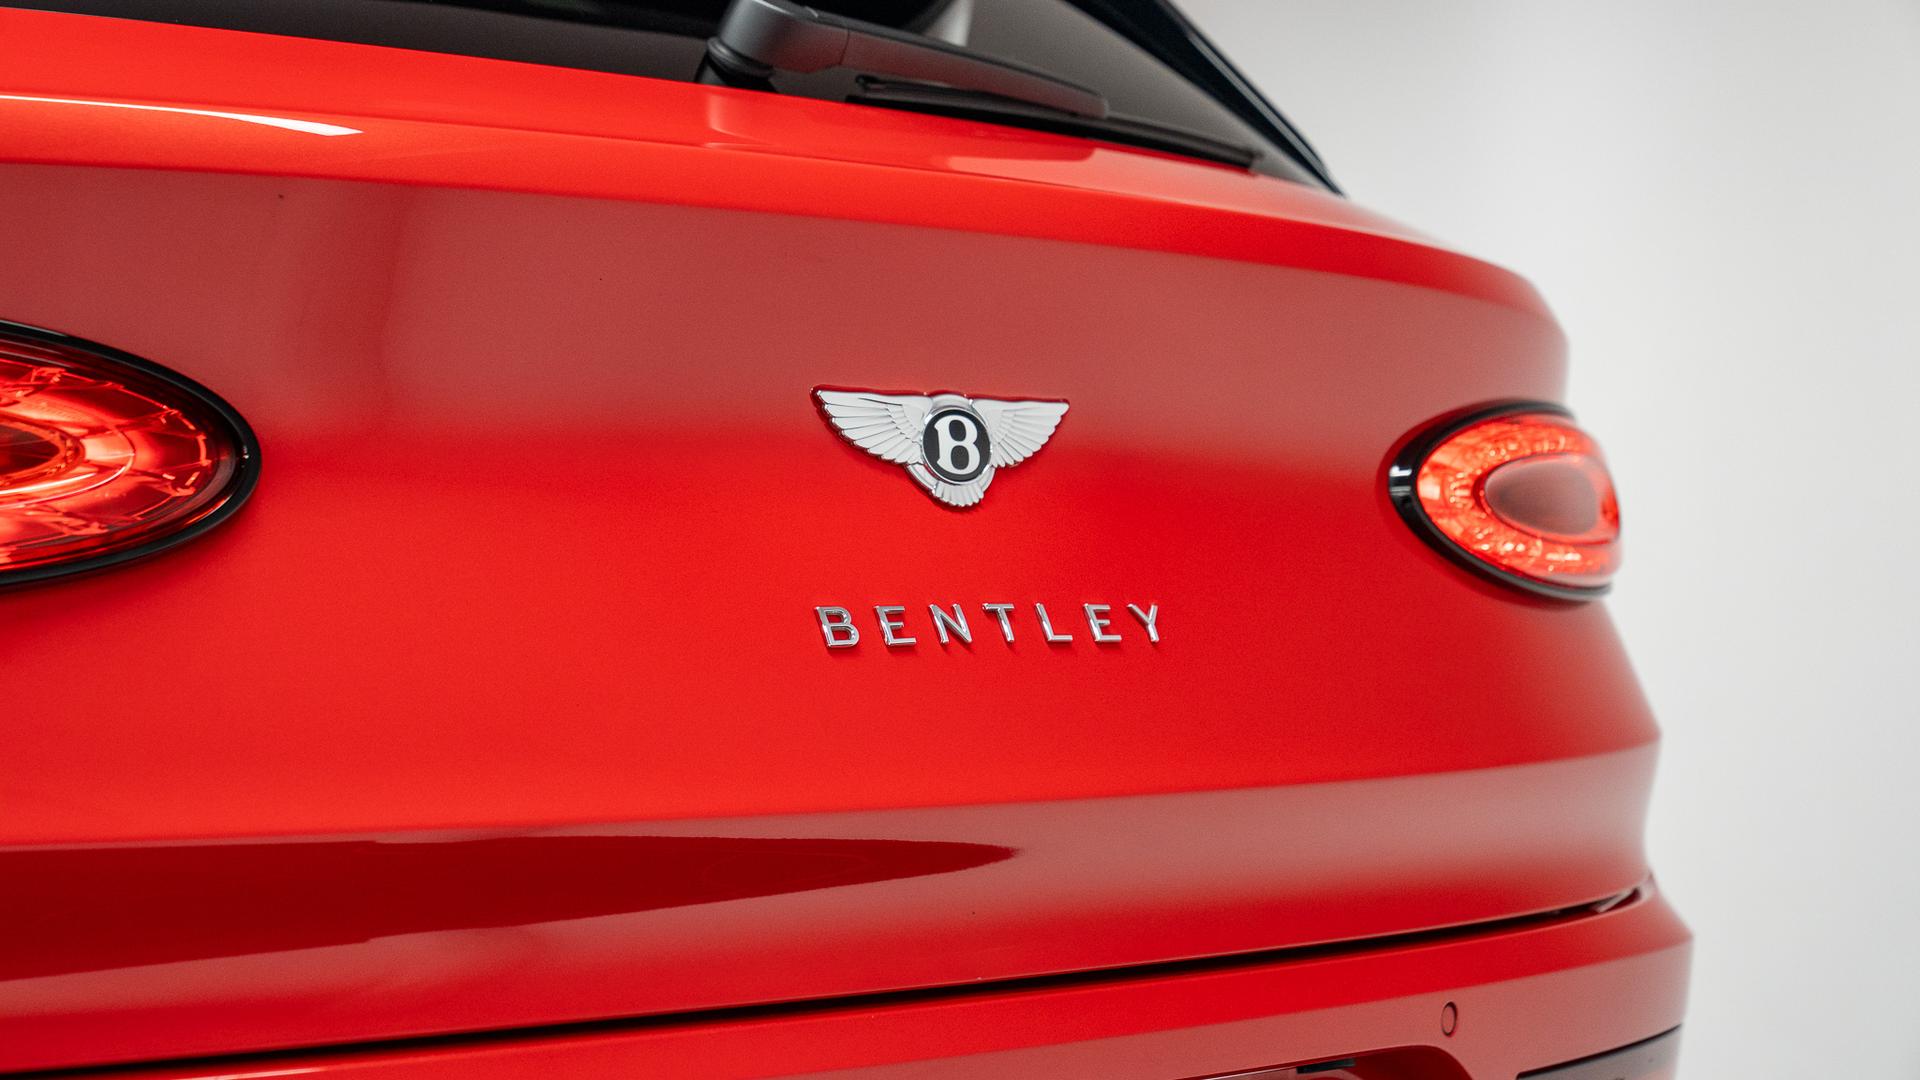 Bentley BENTAYGA Photo e2f97a76-e34a-49b8-9da2-f0e5569f754e.jpg